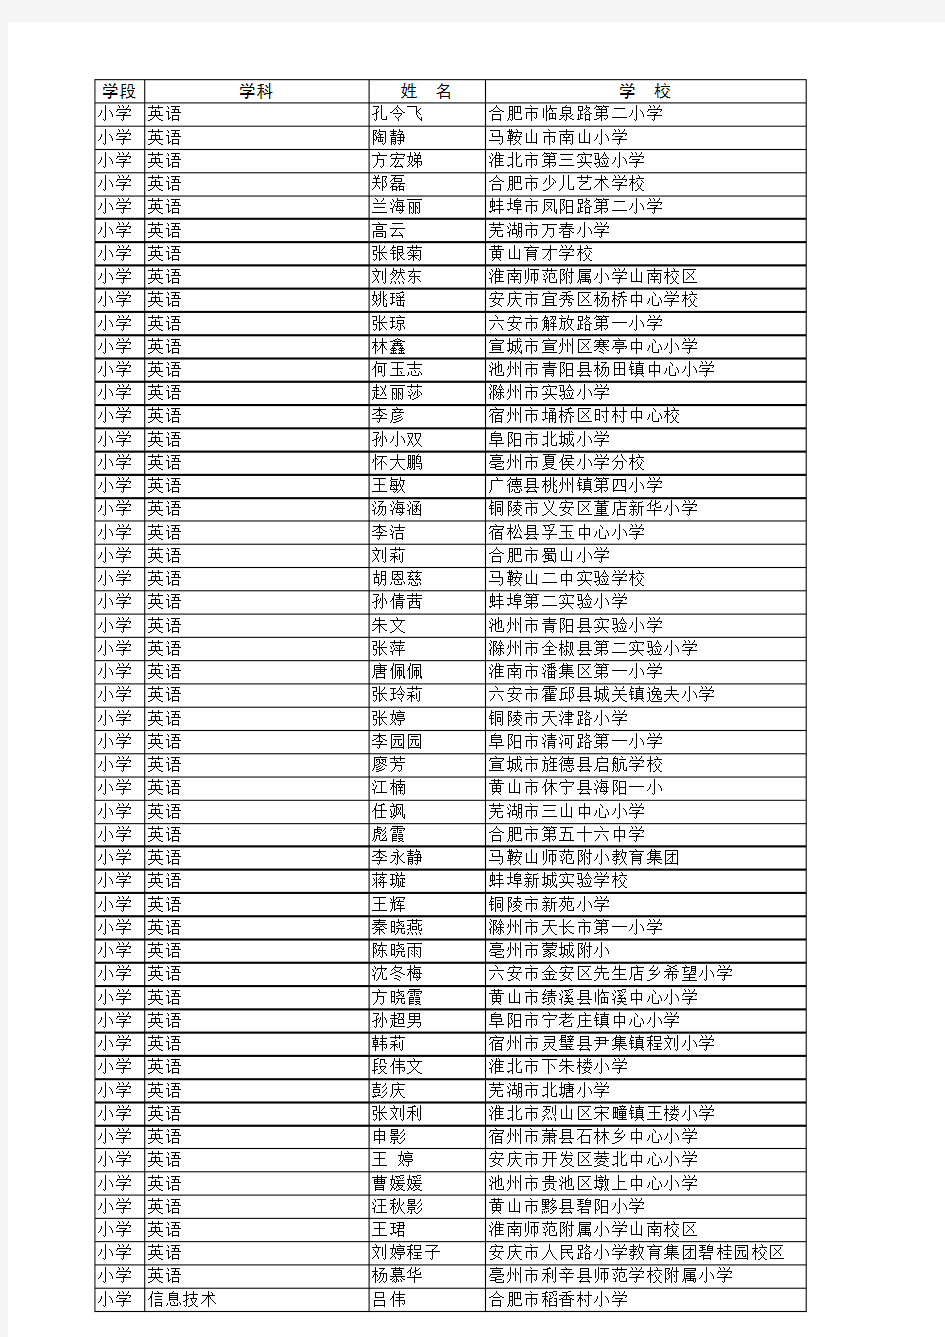 2017年安徽省中小学优质课评选获奖名单(公示)171219